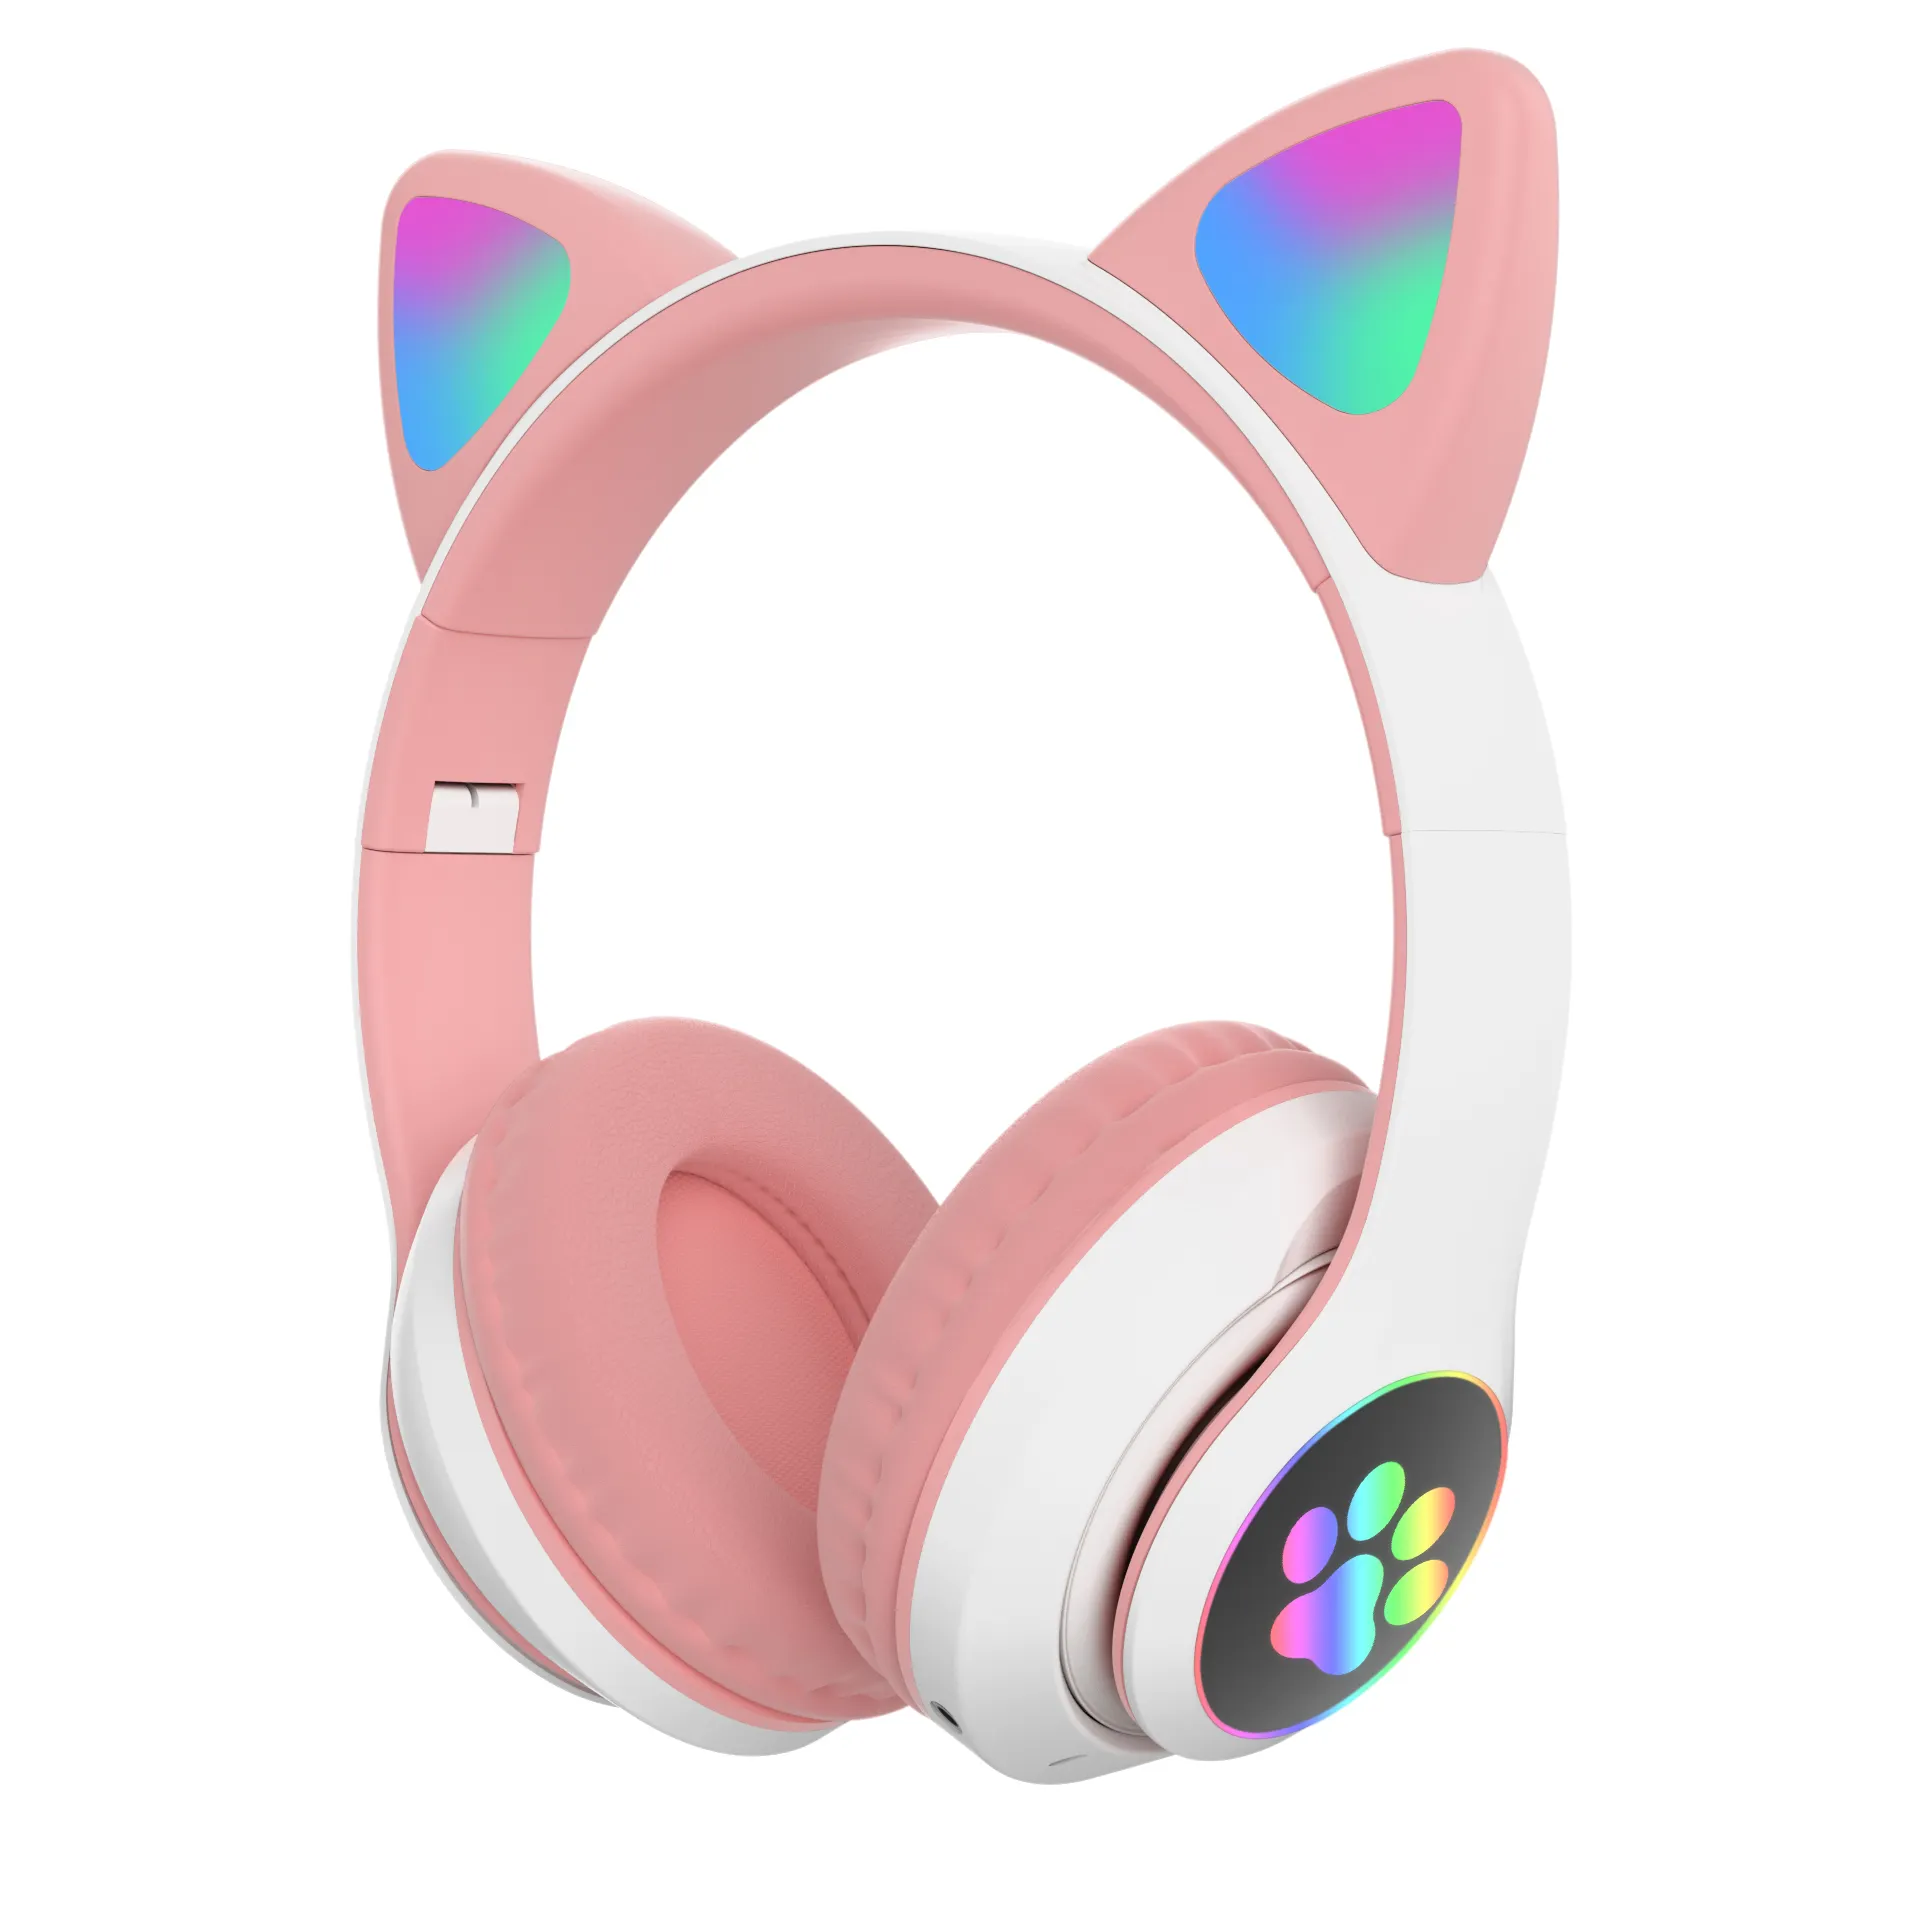 Hermosa LED inalámbrico oreja de gato Mic auriculares estéreo para los adolescentes de los accesorios del teléfono móvil Auriculares auriculares